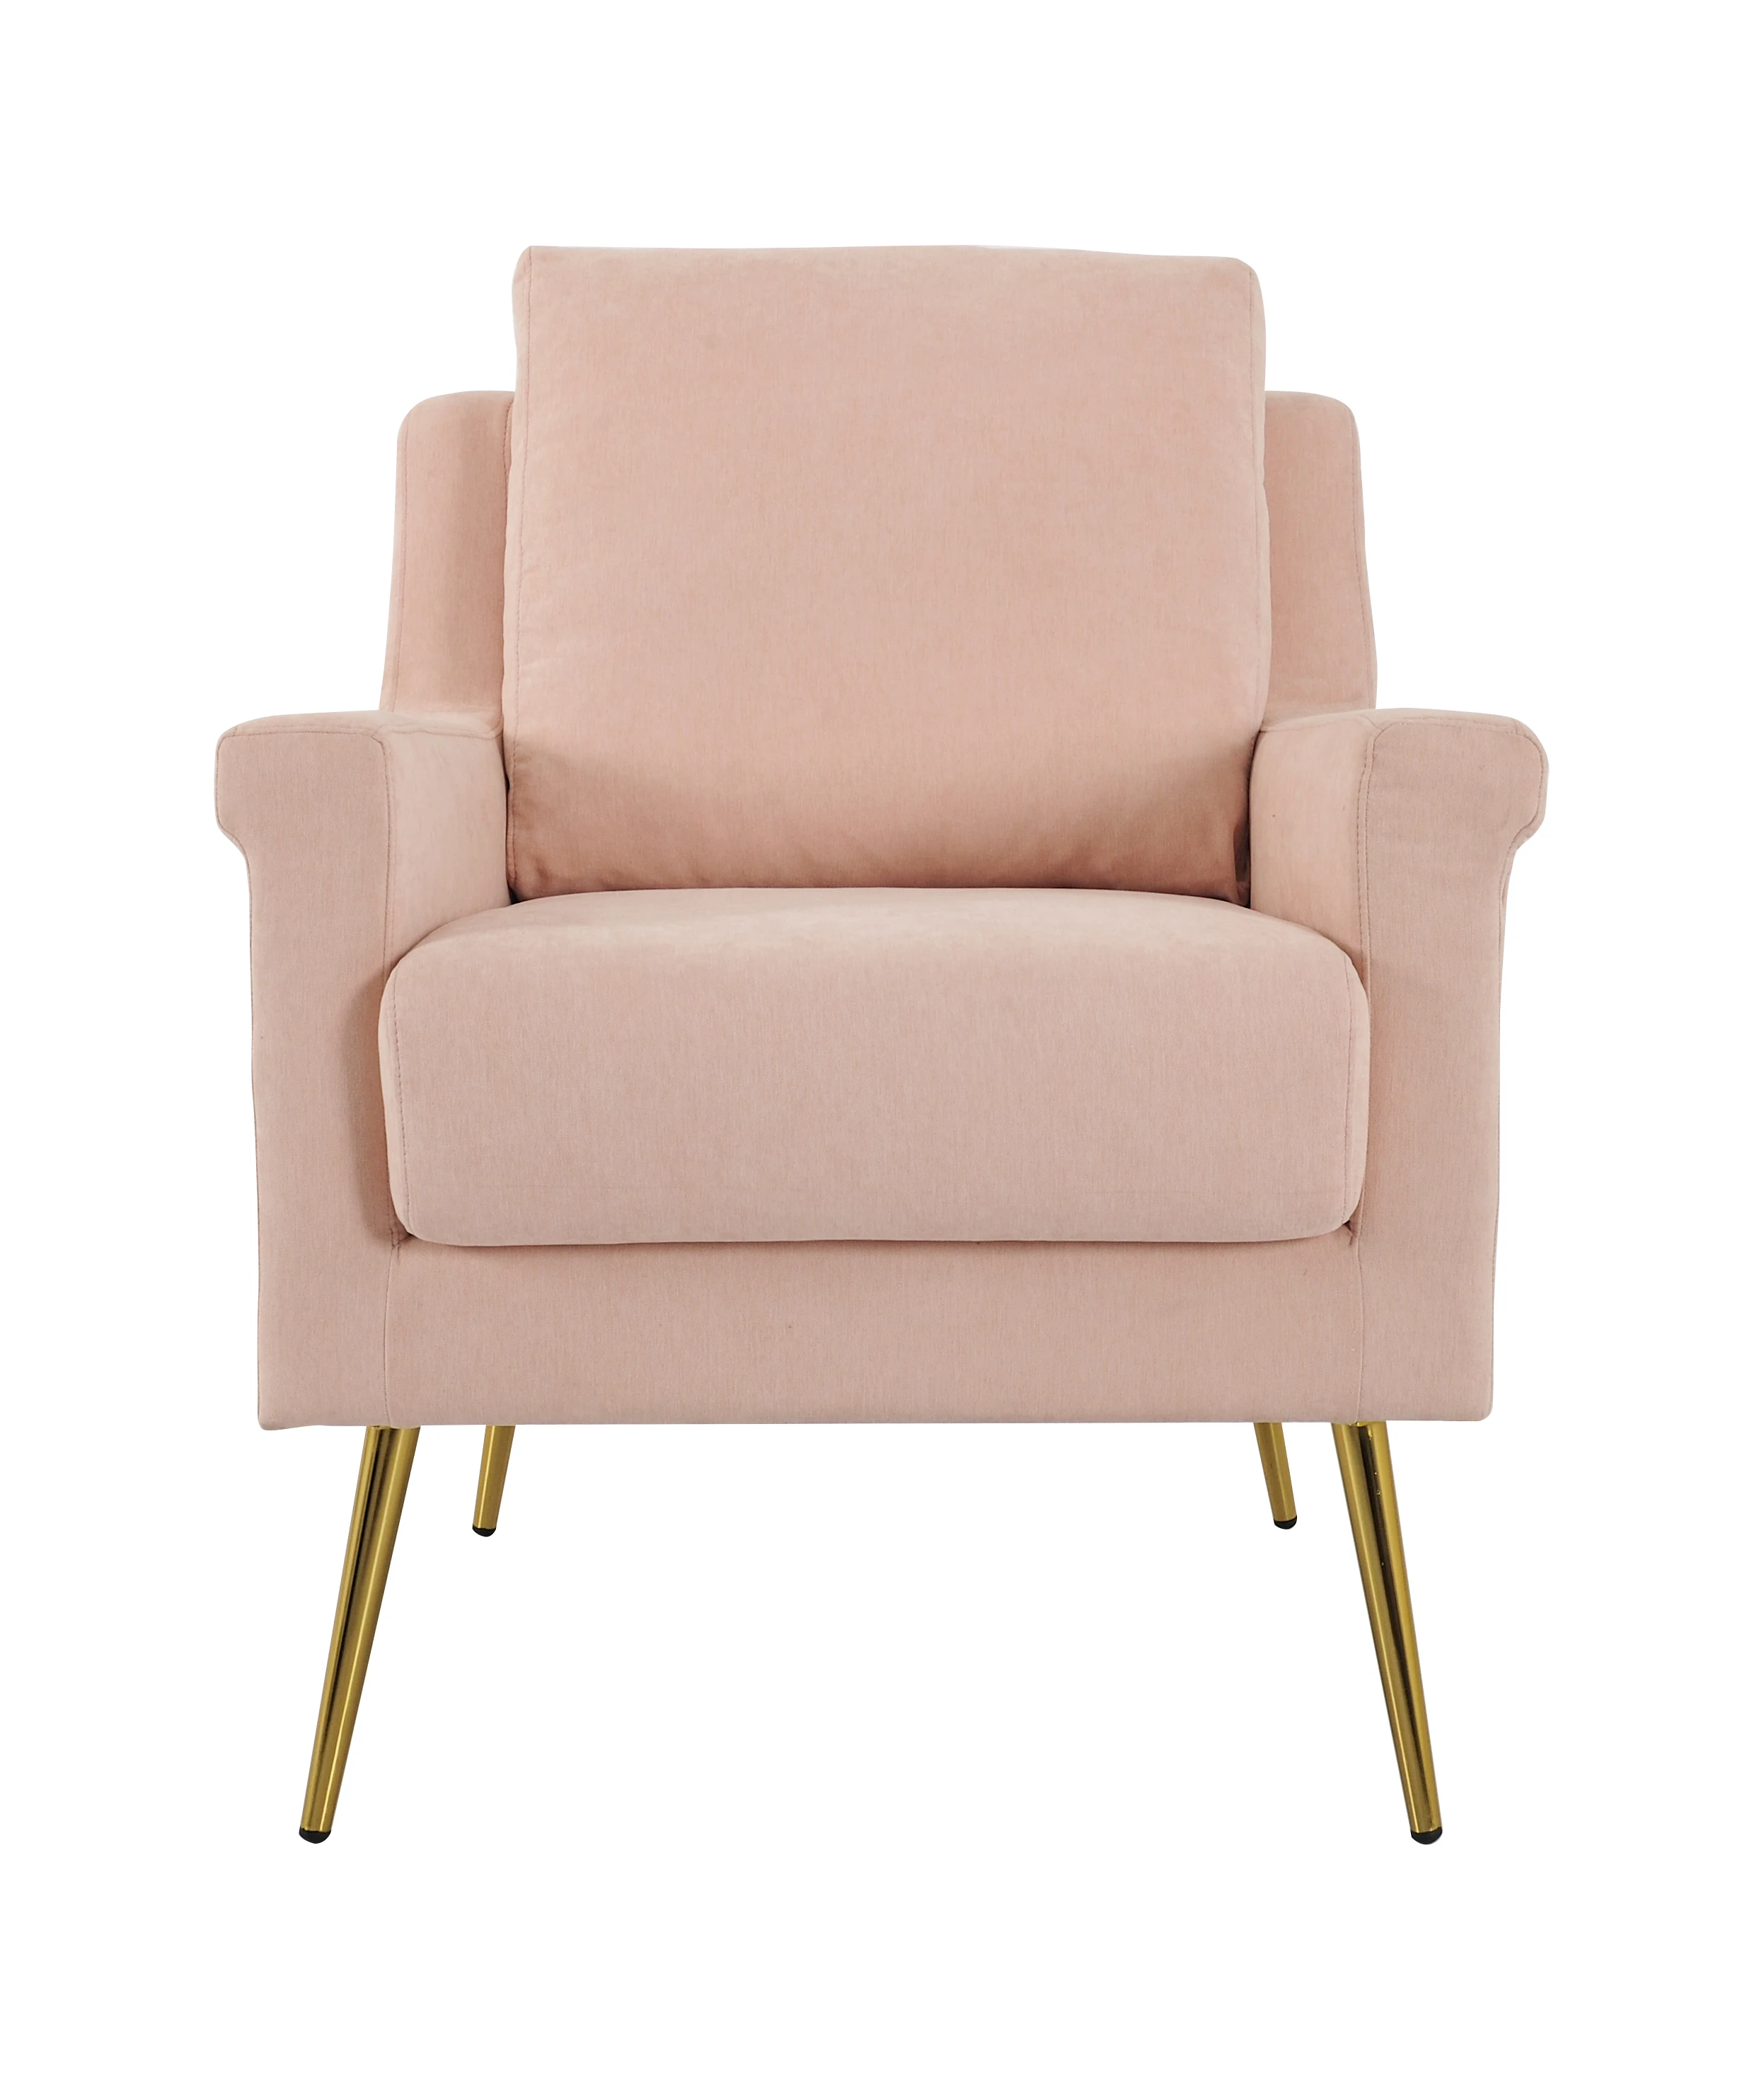 

Современное обеденное кресло Nisco, набор мебели для гостиной, одноместный диван-стул с металлическими ножками, стеганая ткань с твердым рисунком